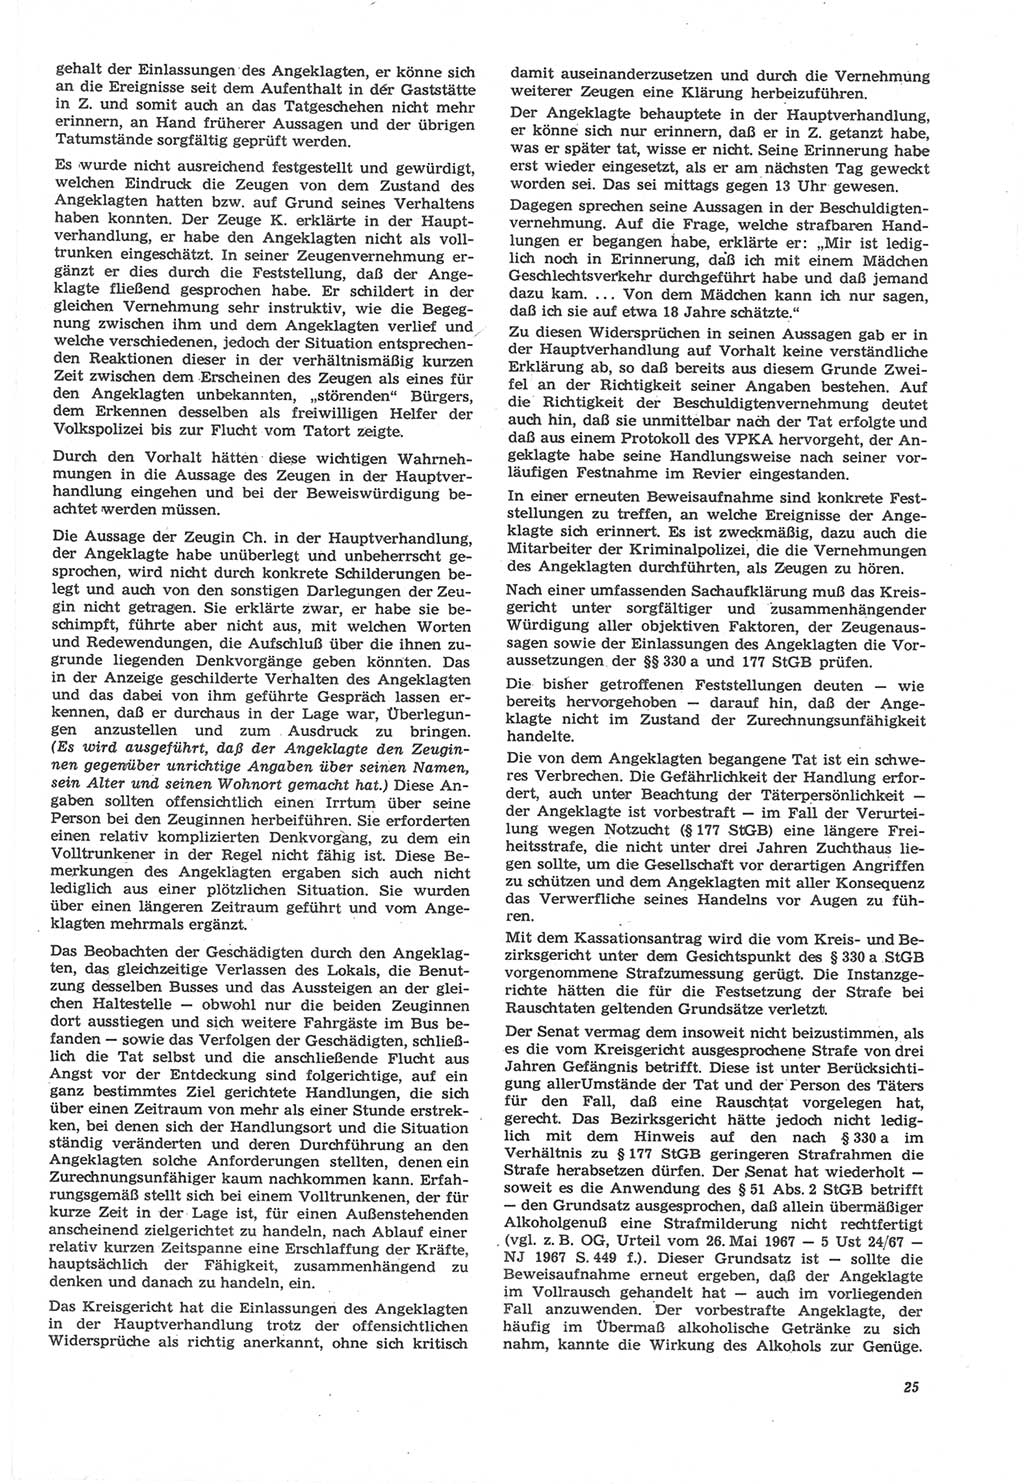 Neue Justiz (NJ), Zeitschrift für Recht und Rechtswissenschaft [Deutsche Demokratische Republik (DDR)], 22. Jahrgang 1968, Seite 25 (NJ DDR 1968, S. 25)